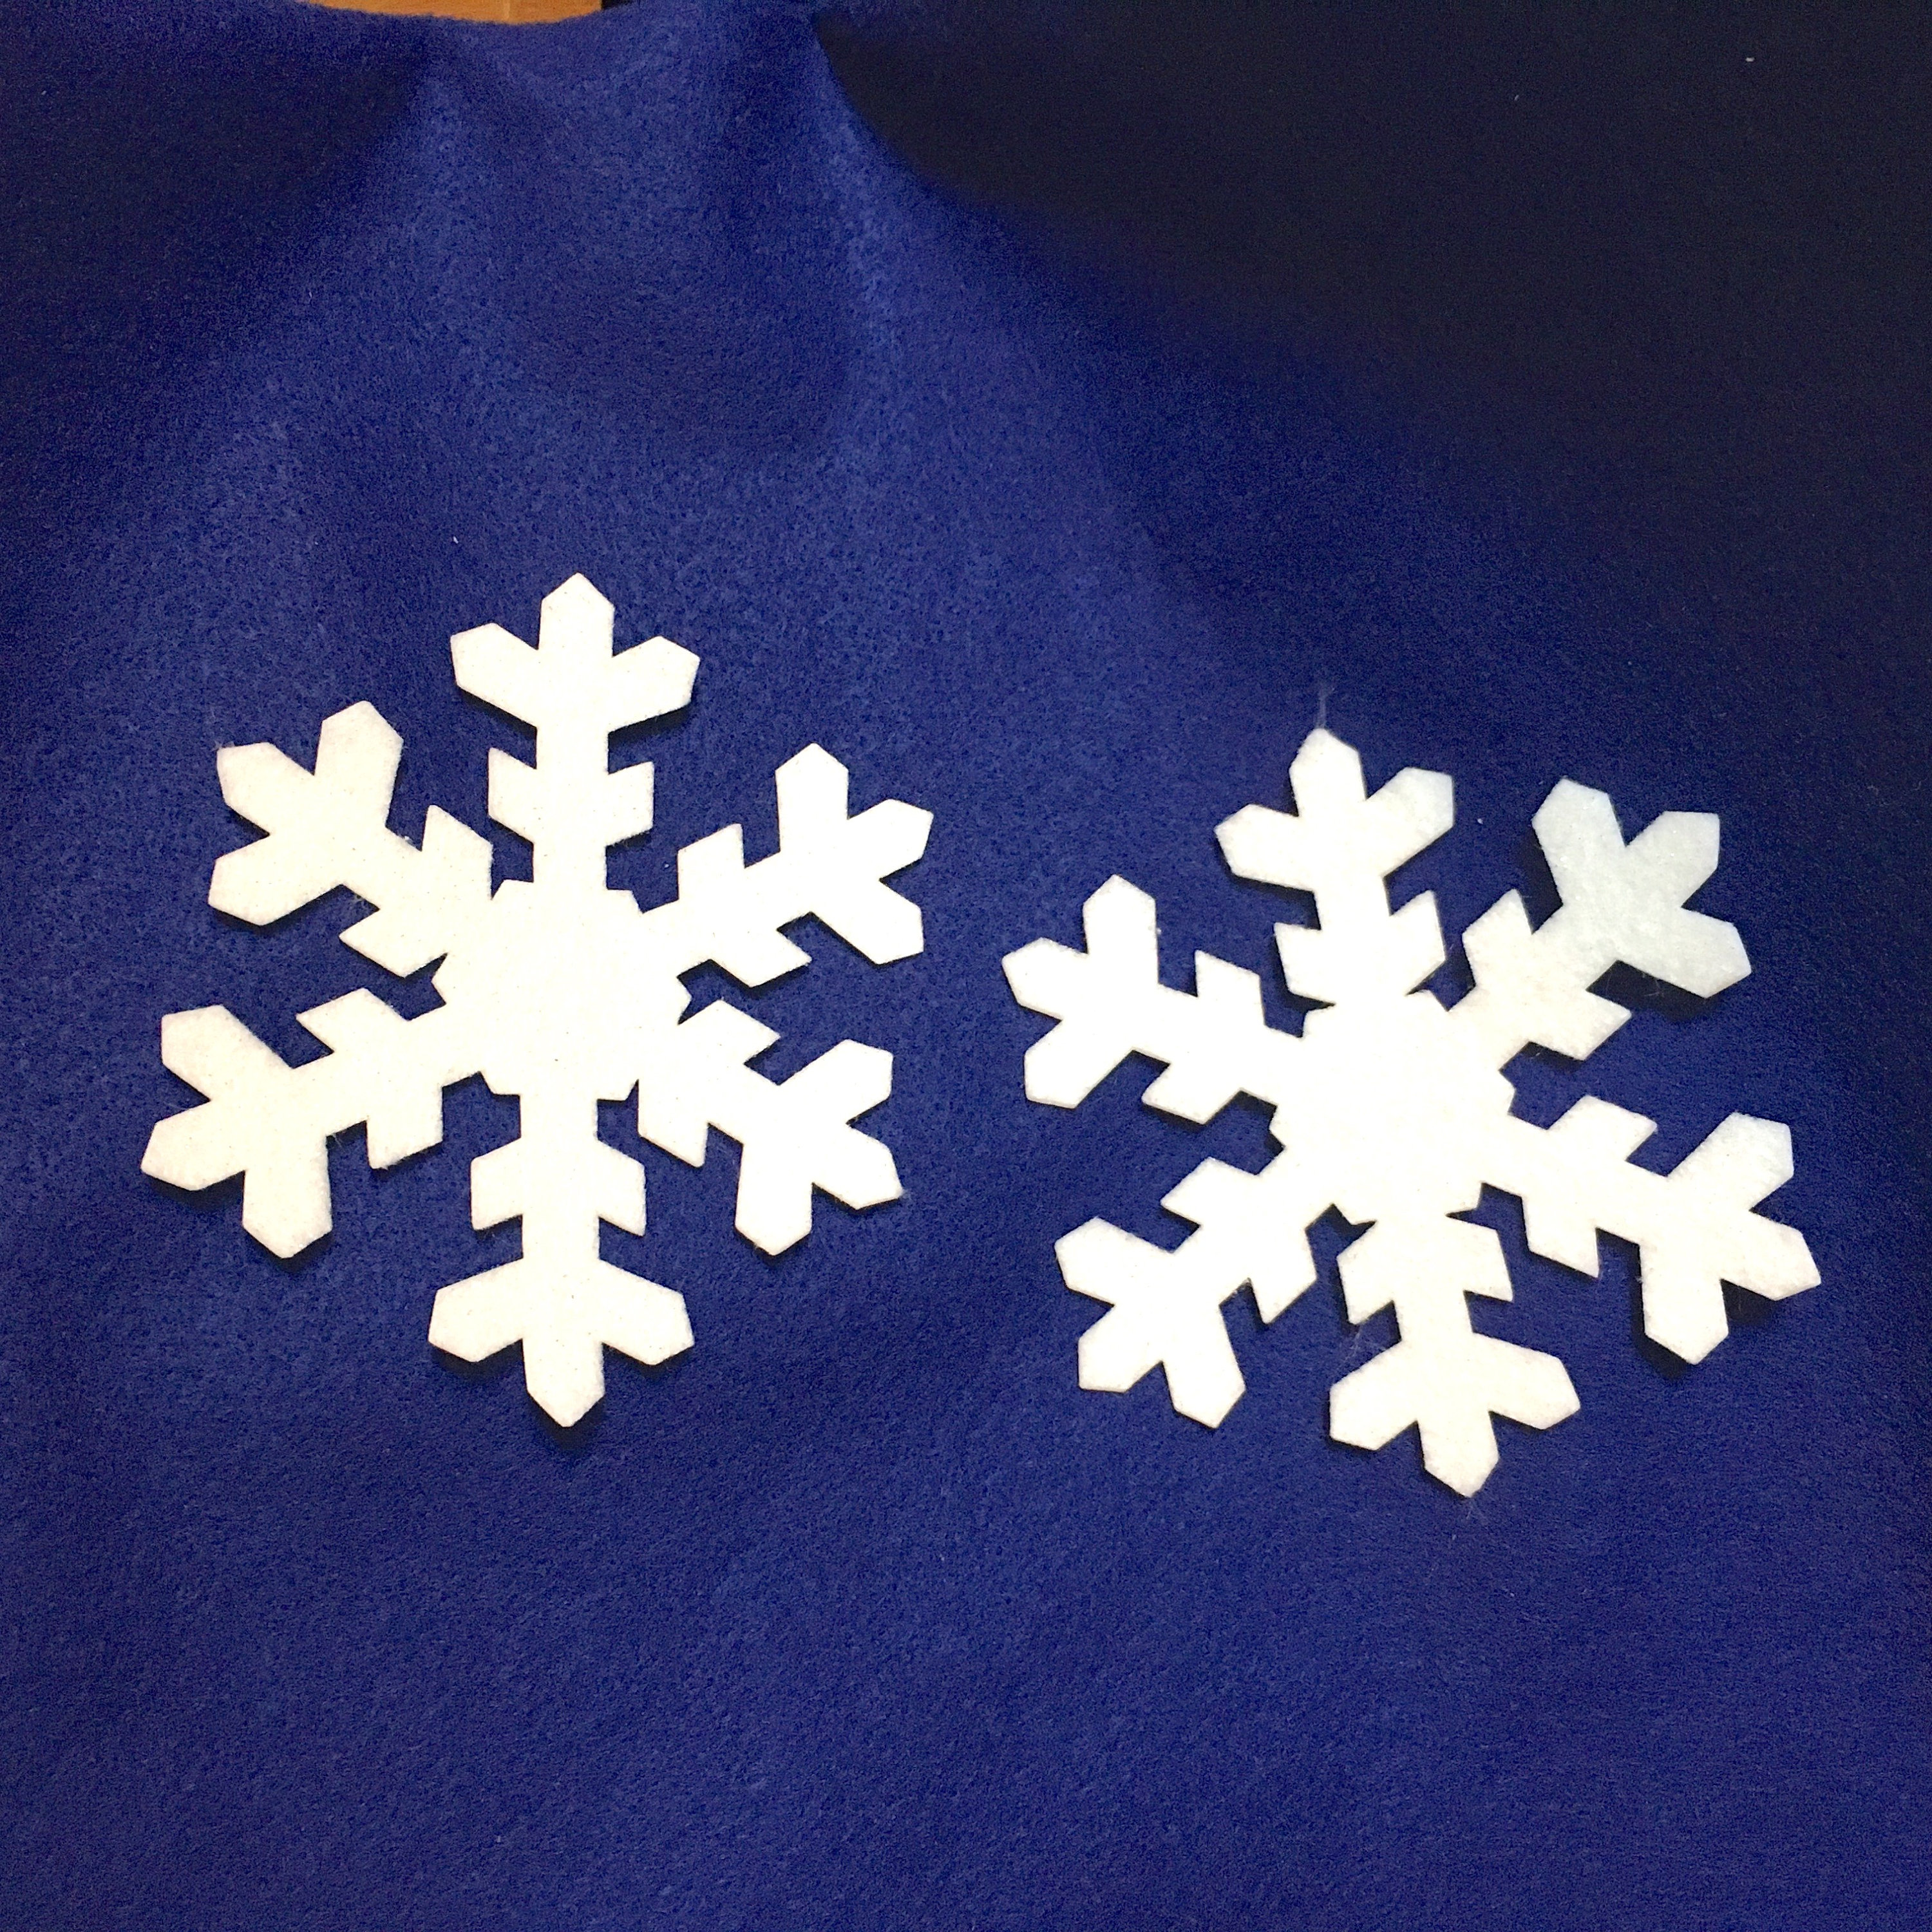 Felt Snowflakes, Die Cut Lacy Snowflakes 